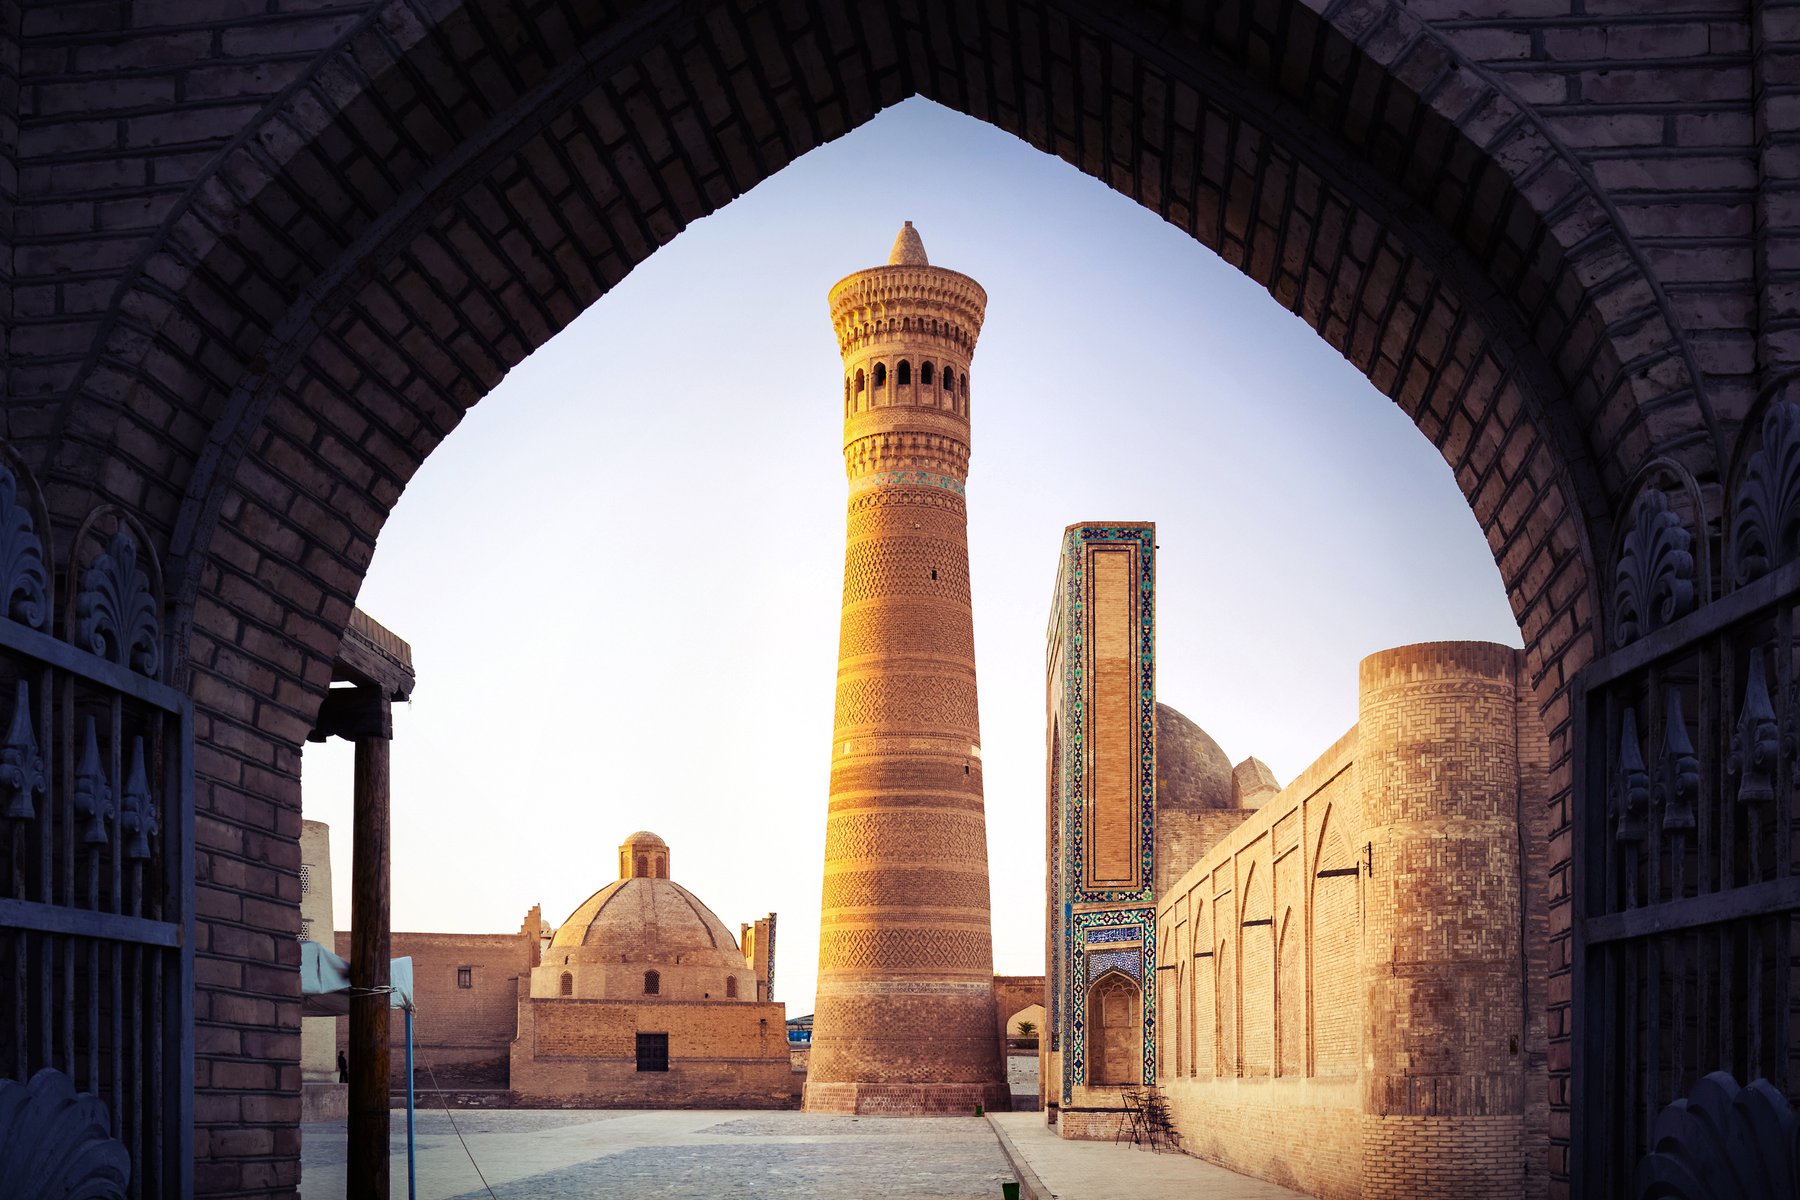 Den mäktiga Kaylan minareten från 1100-talet i Bukhara